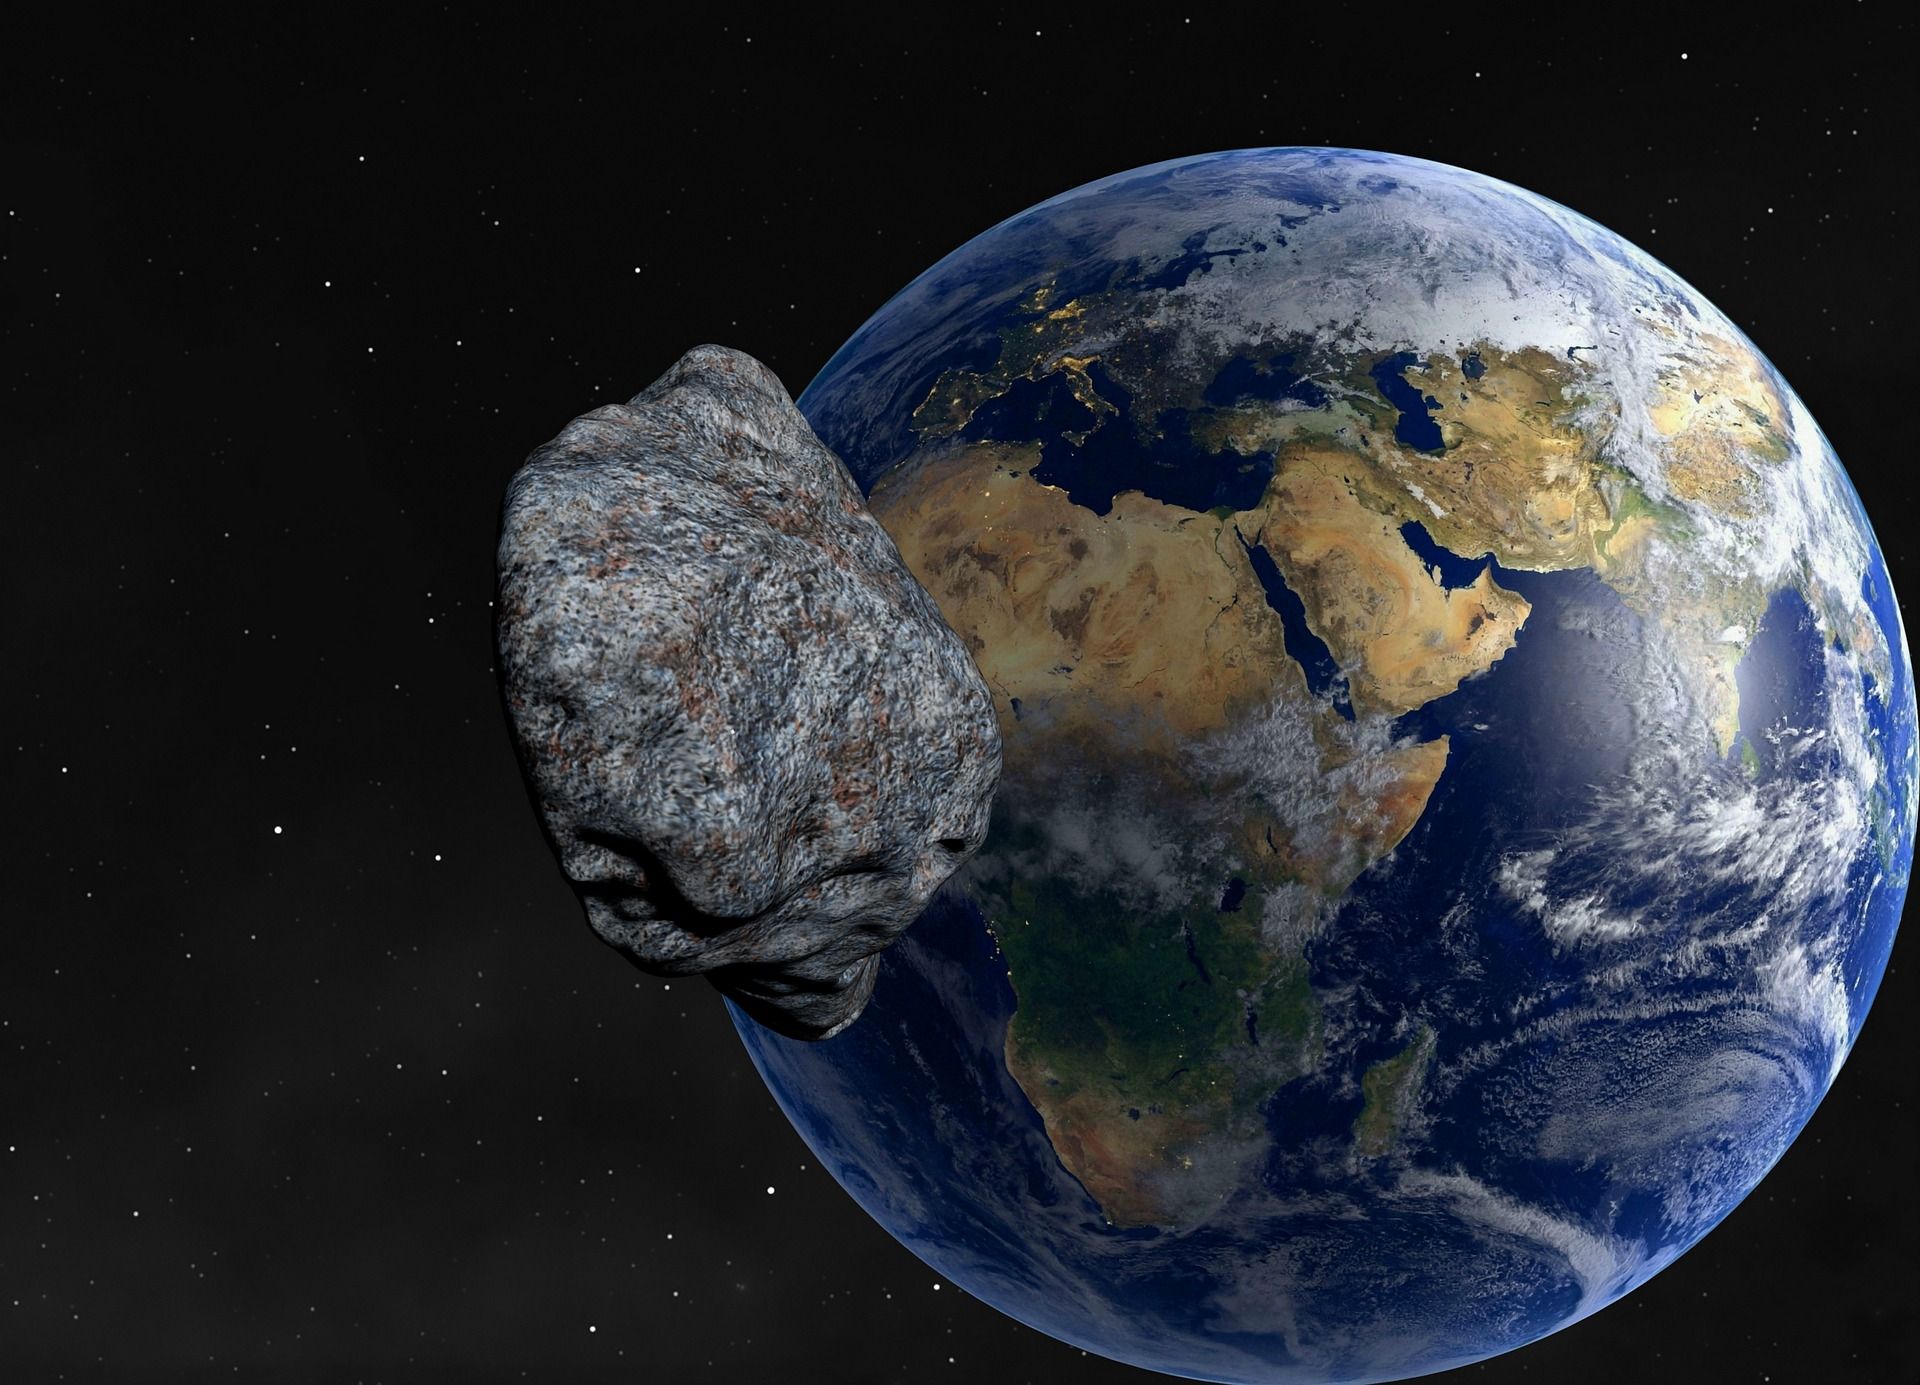 Un asteroide "potencialment perillós" passarà molt a prop de la Terra aquest dimarts